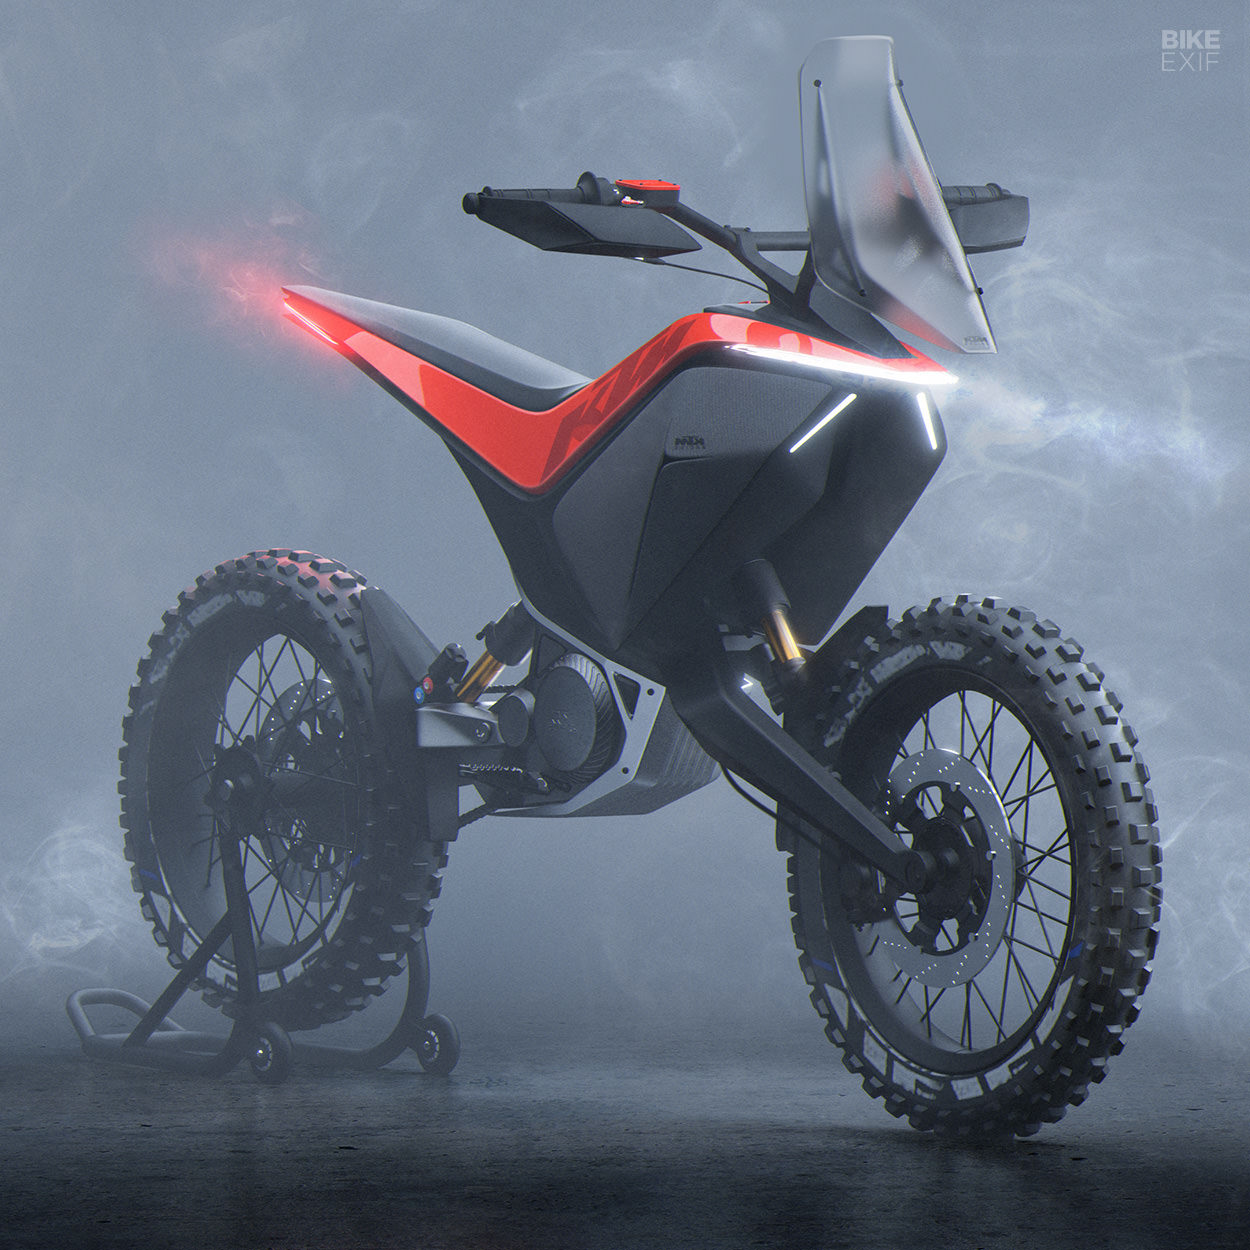 KTM enduro concept by Julien Lecreux